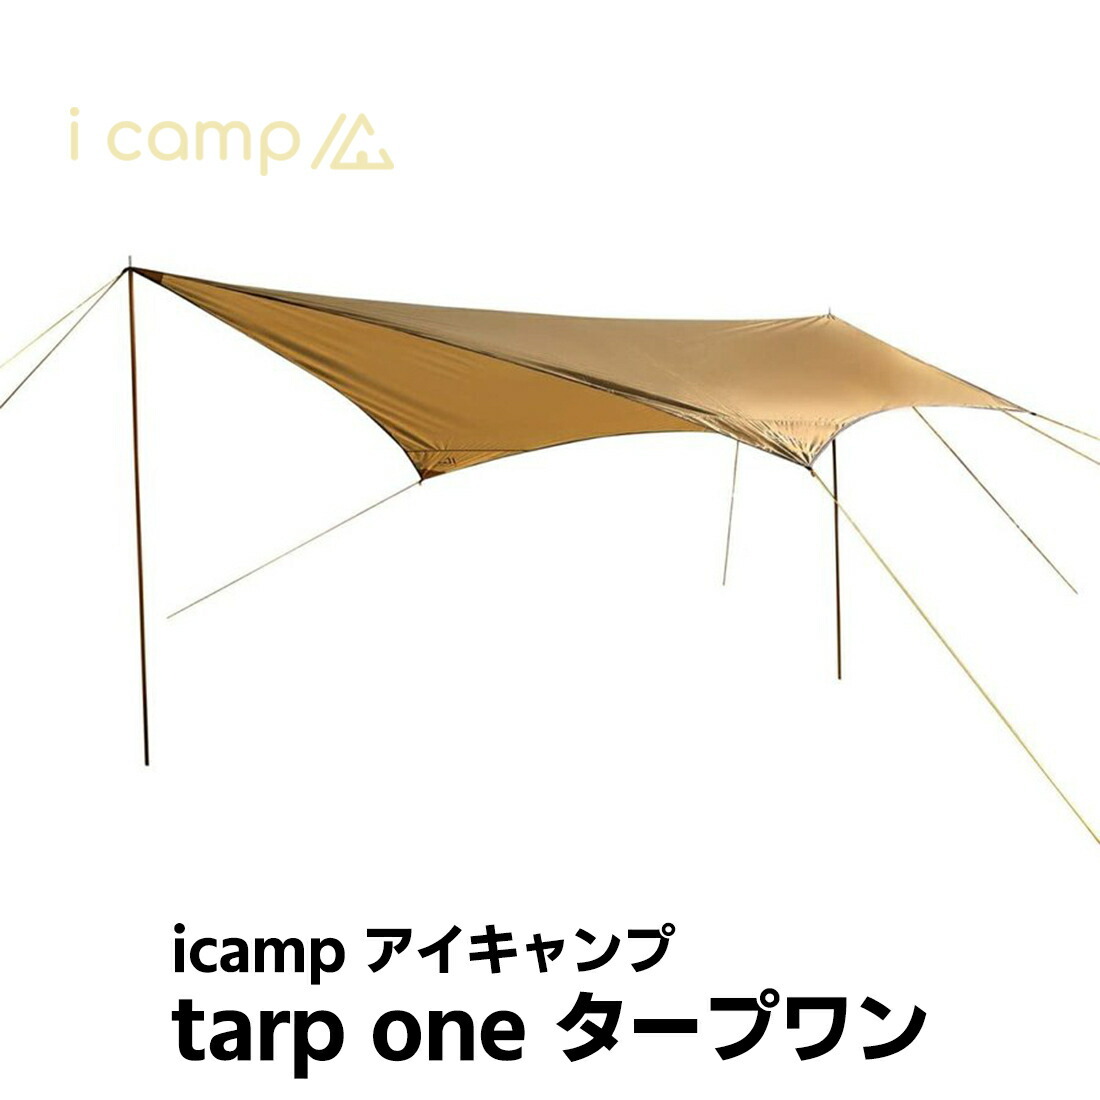 icamp(アイキャンプ) タープワン ソロタープ tarp one ペンタゴンタープ 軽量1.6kg アルミニウム合金ポール2本付 ソロキャンプ